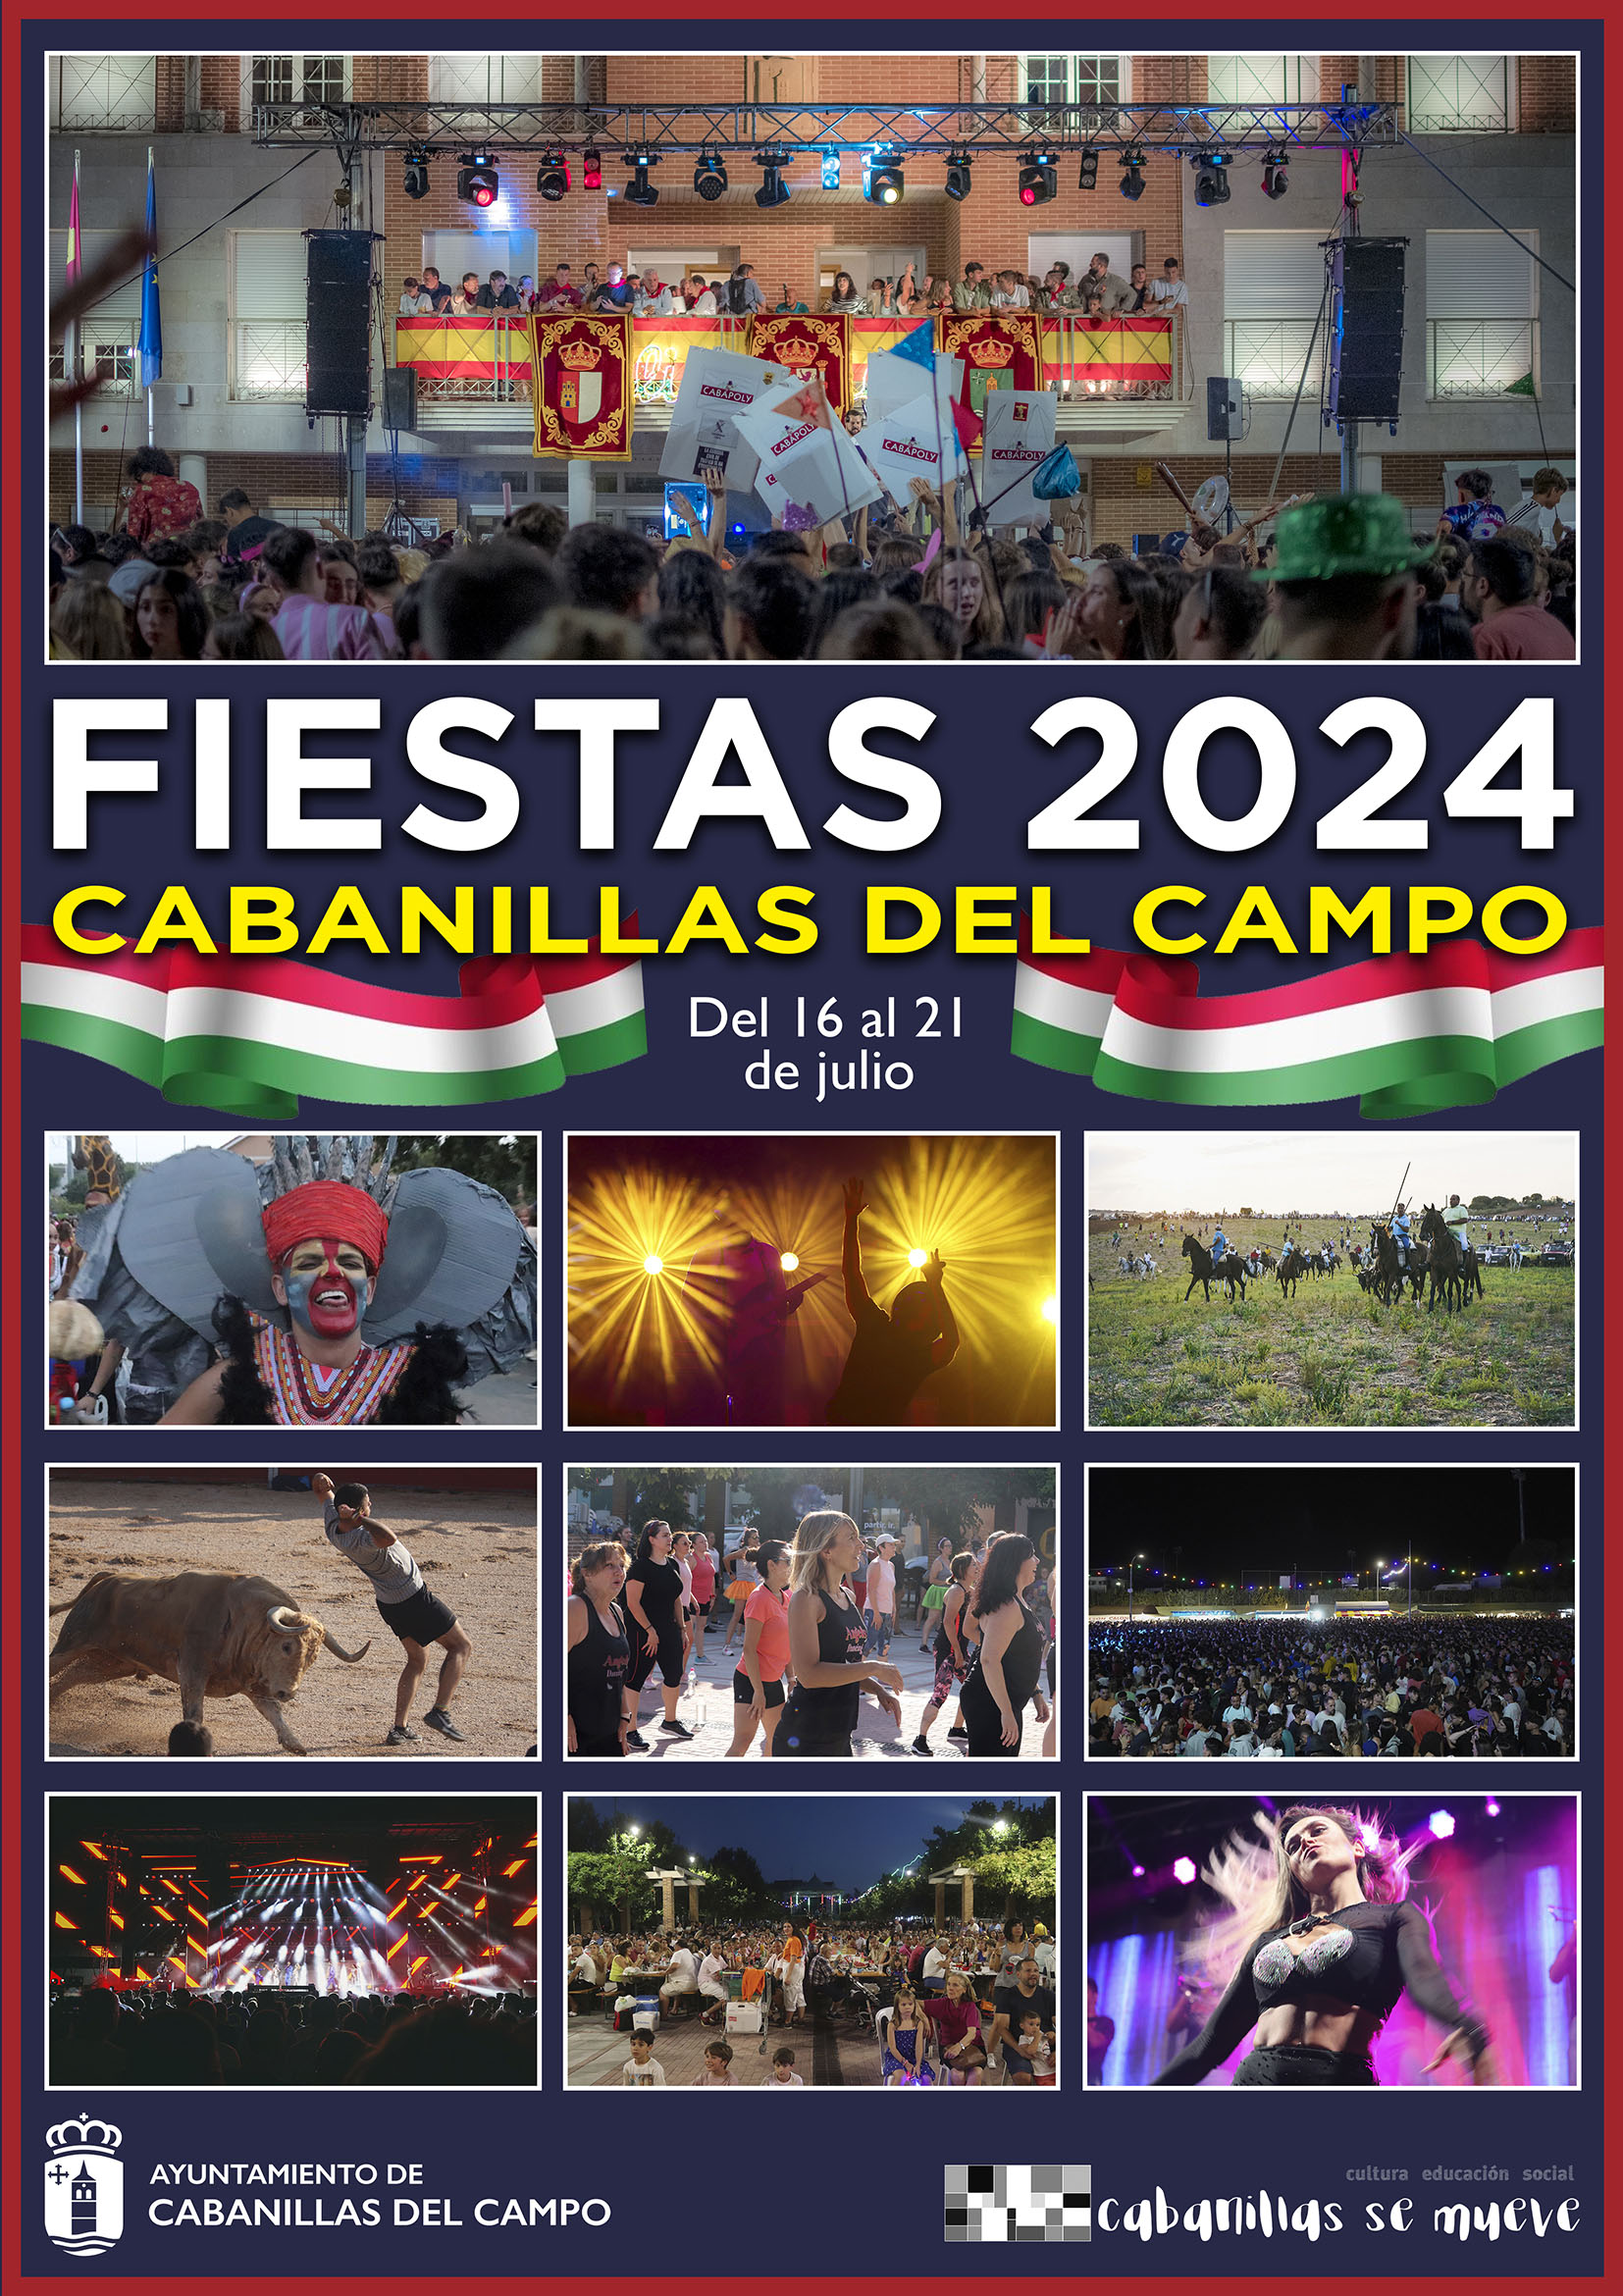 Fiestas de Cabanillas del Campo 2024